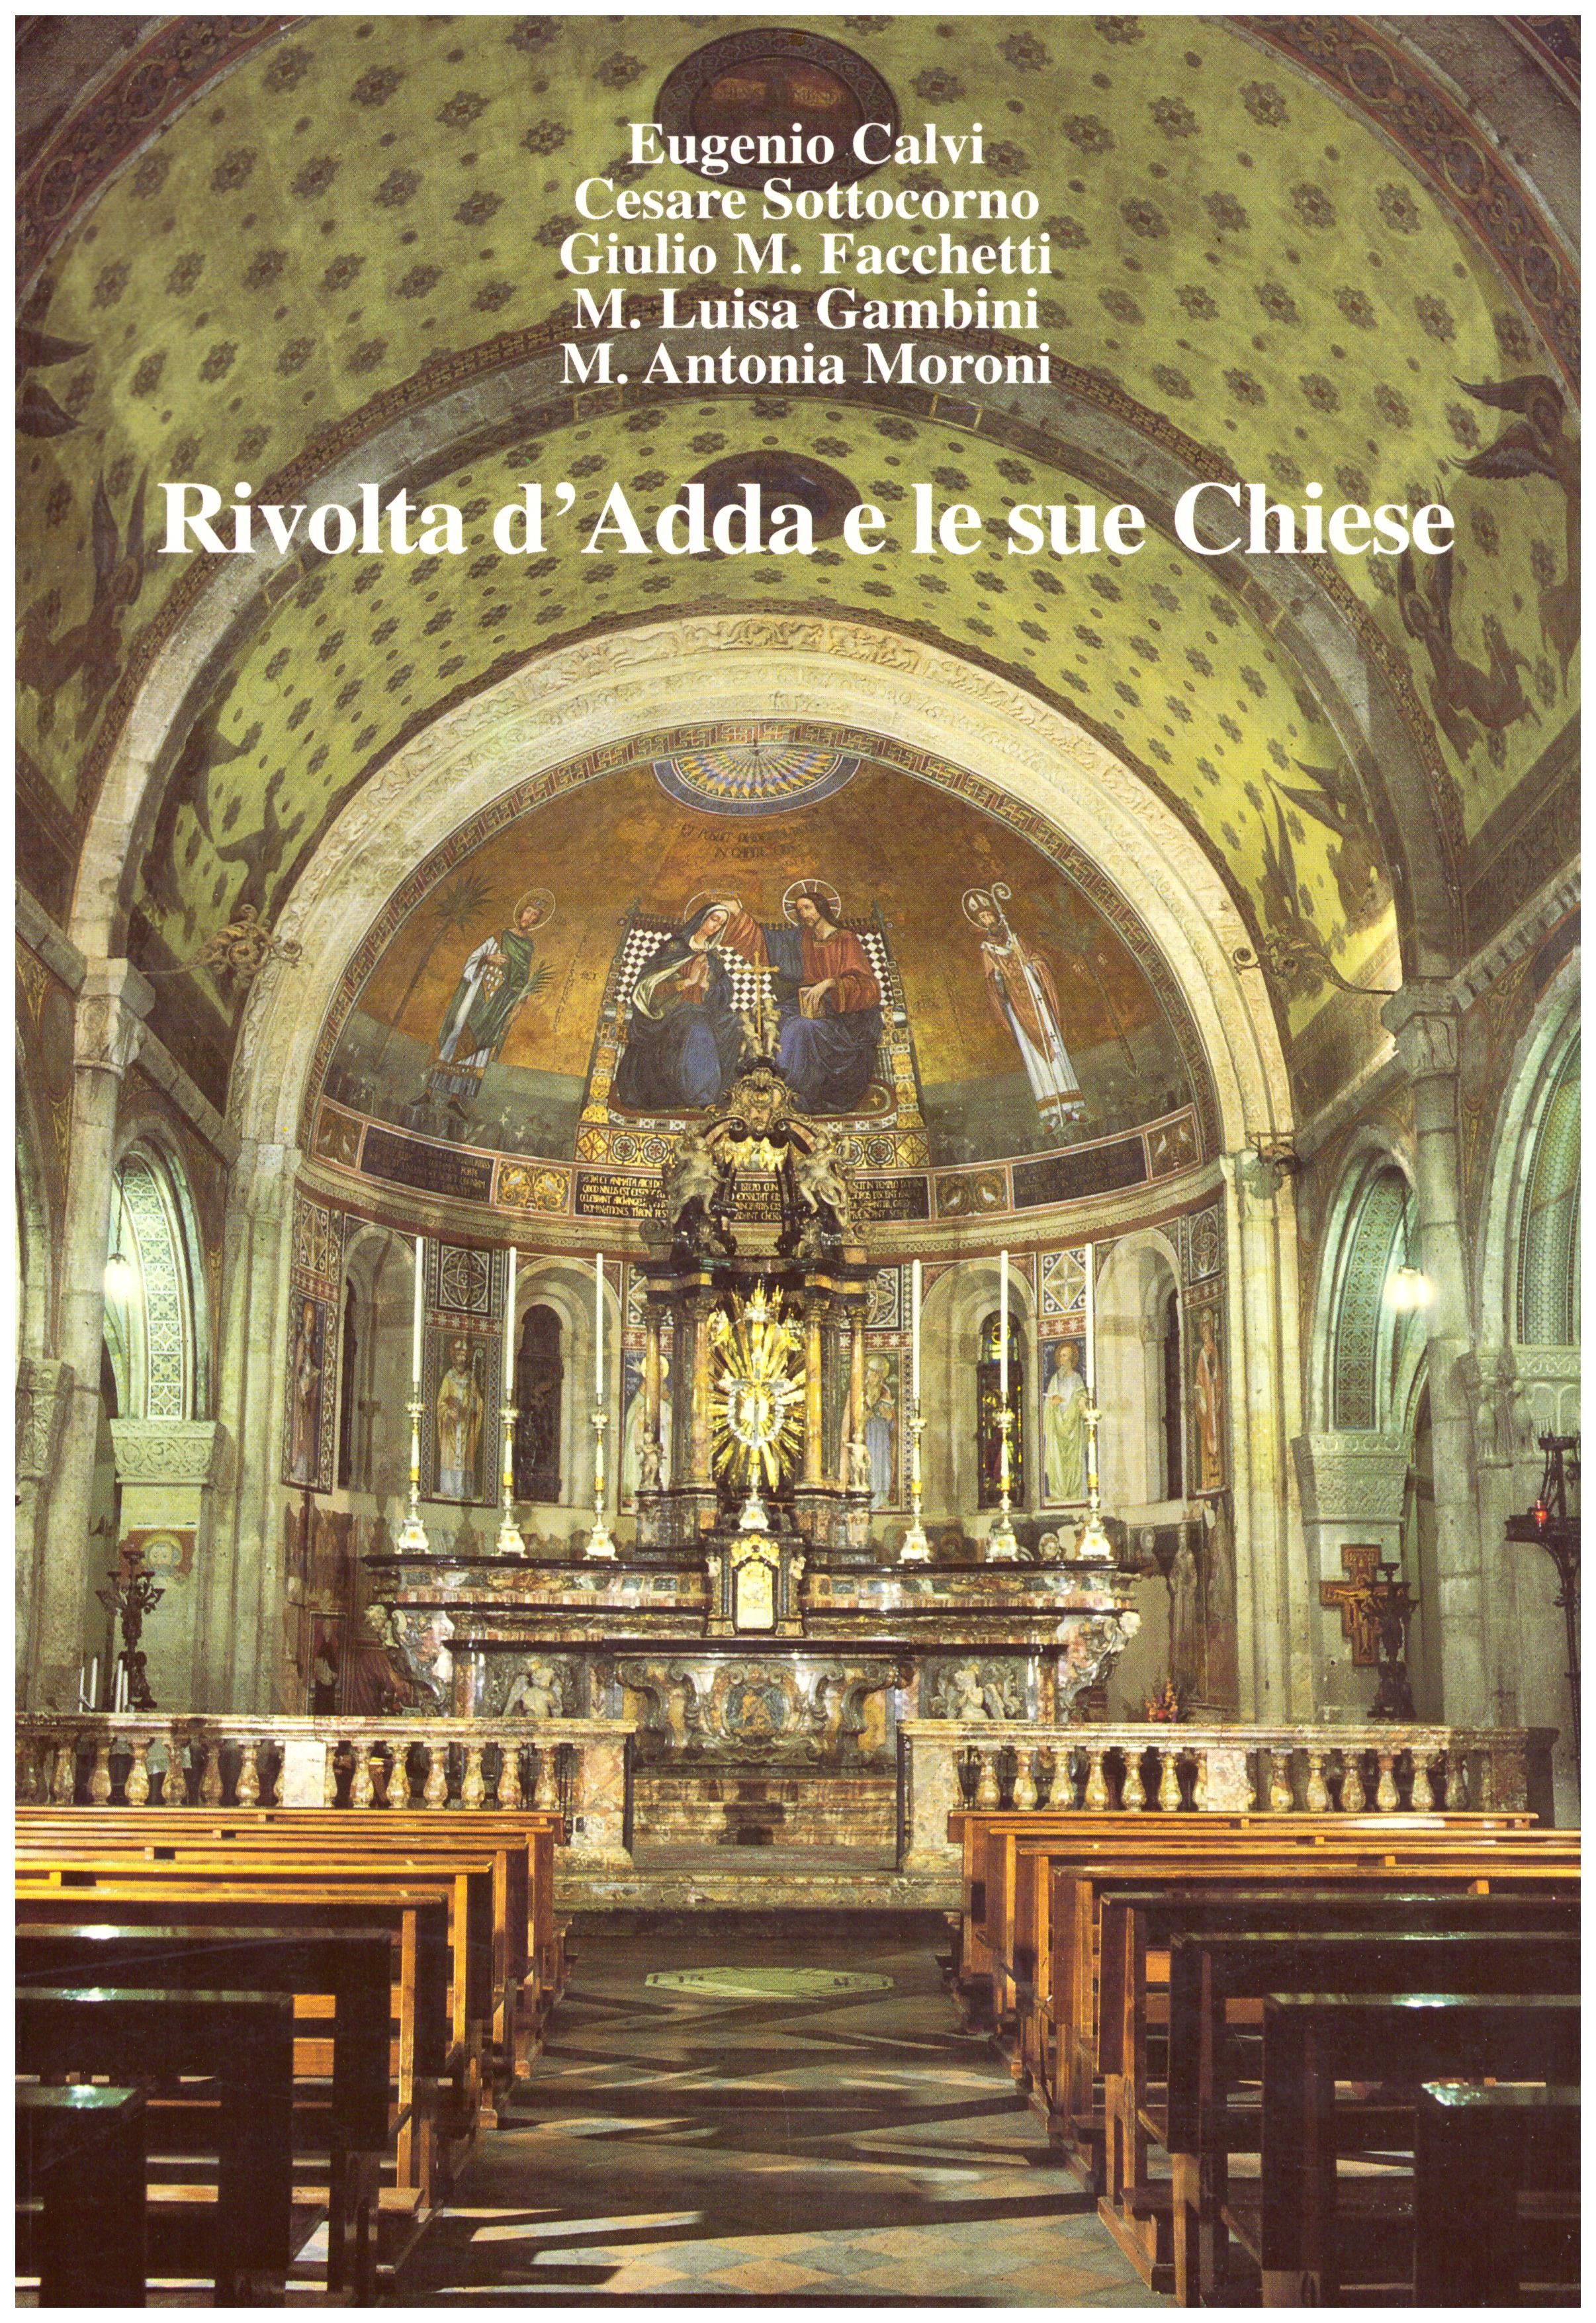 Titolo: Rivolta d'Adda e le sue chiese Autore: AA.VV. Editore: Arti grafiche Bianca e Volta, 1996